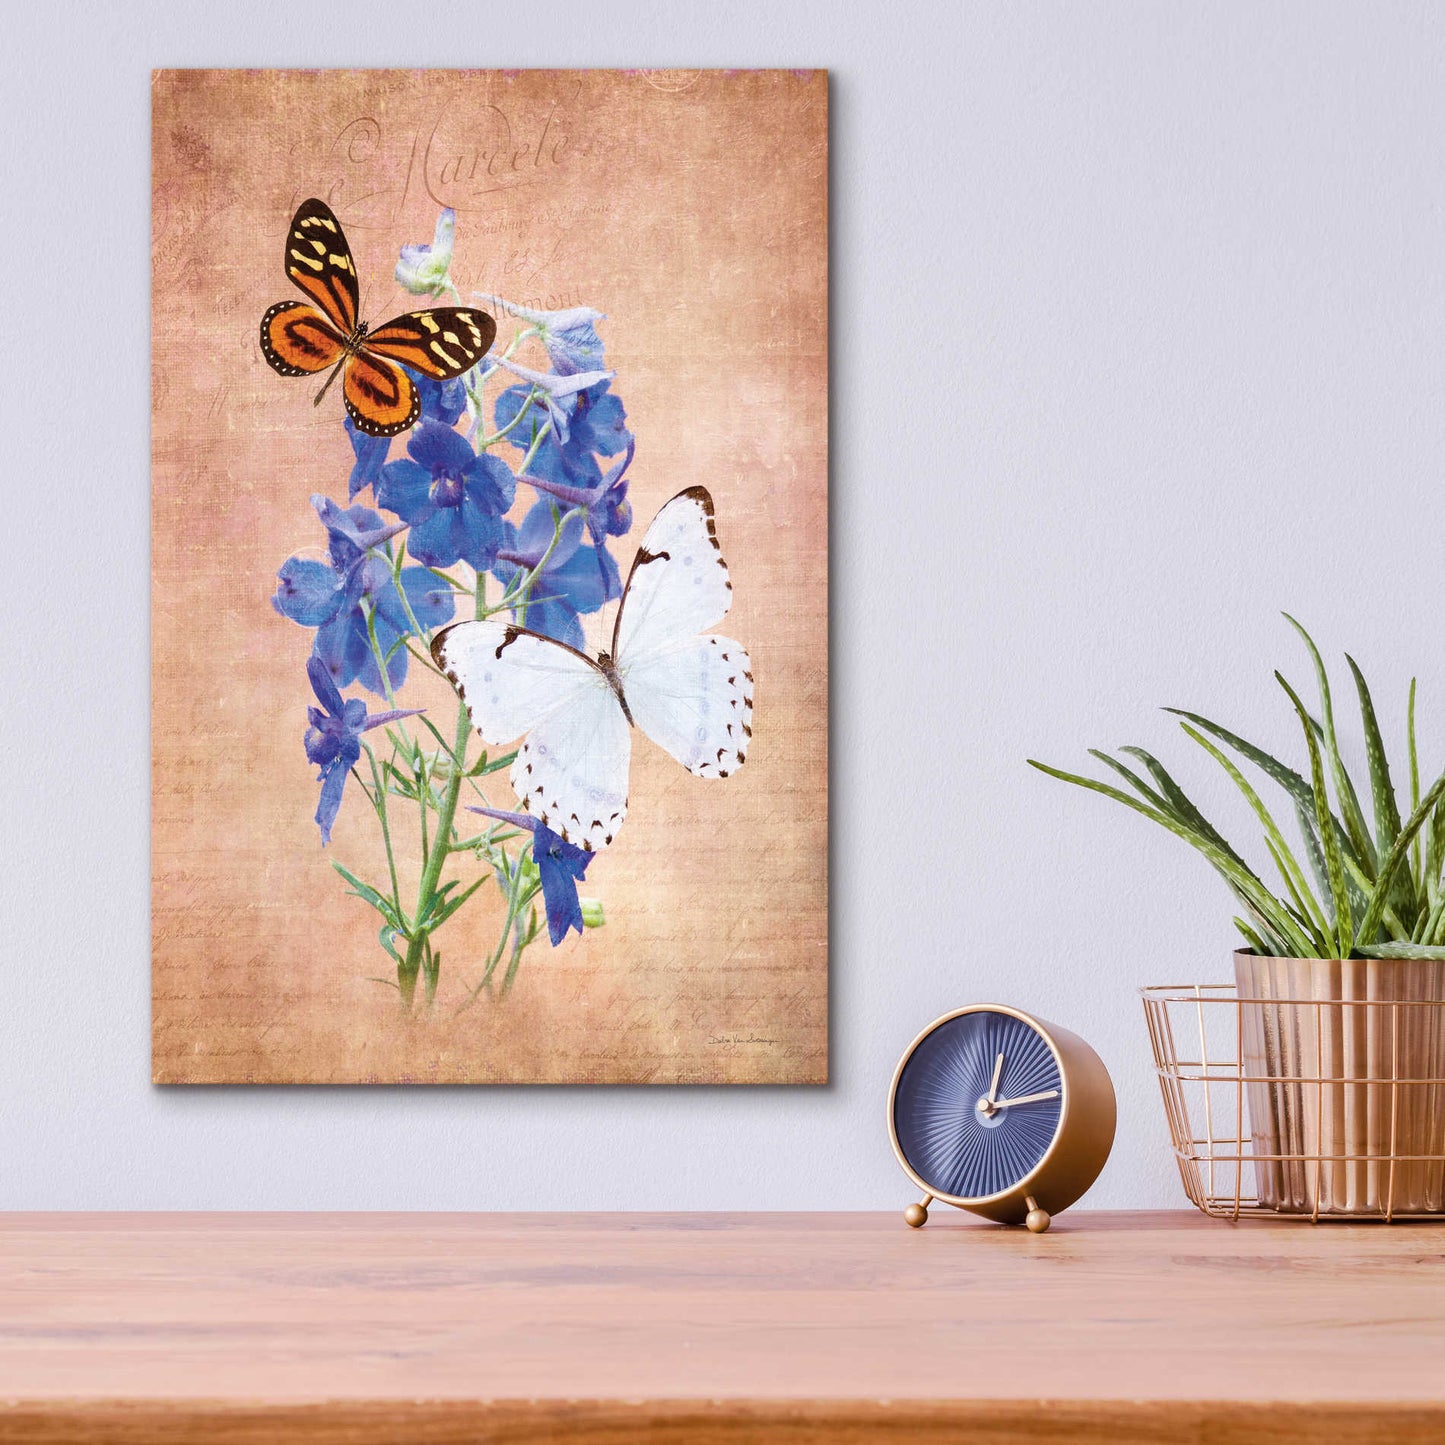 Epic Art 'Butterfly Botanical III' by Debra Van Swearingen, Acrylic Glass Wall Art,12x16